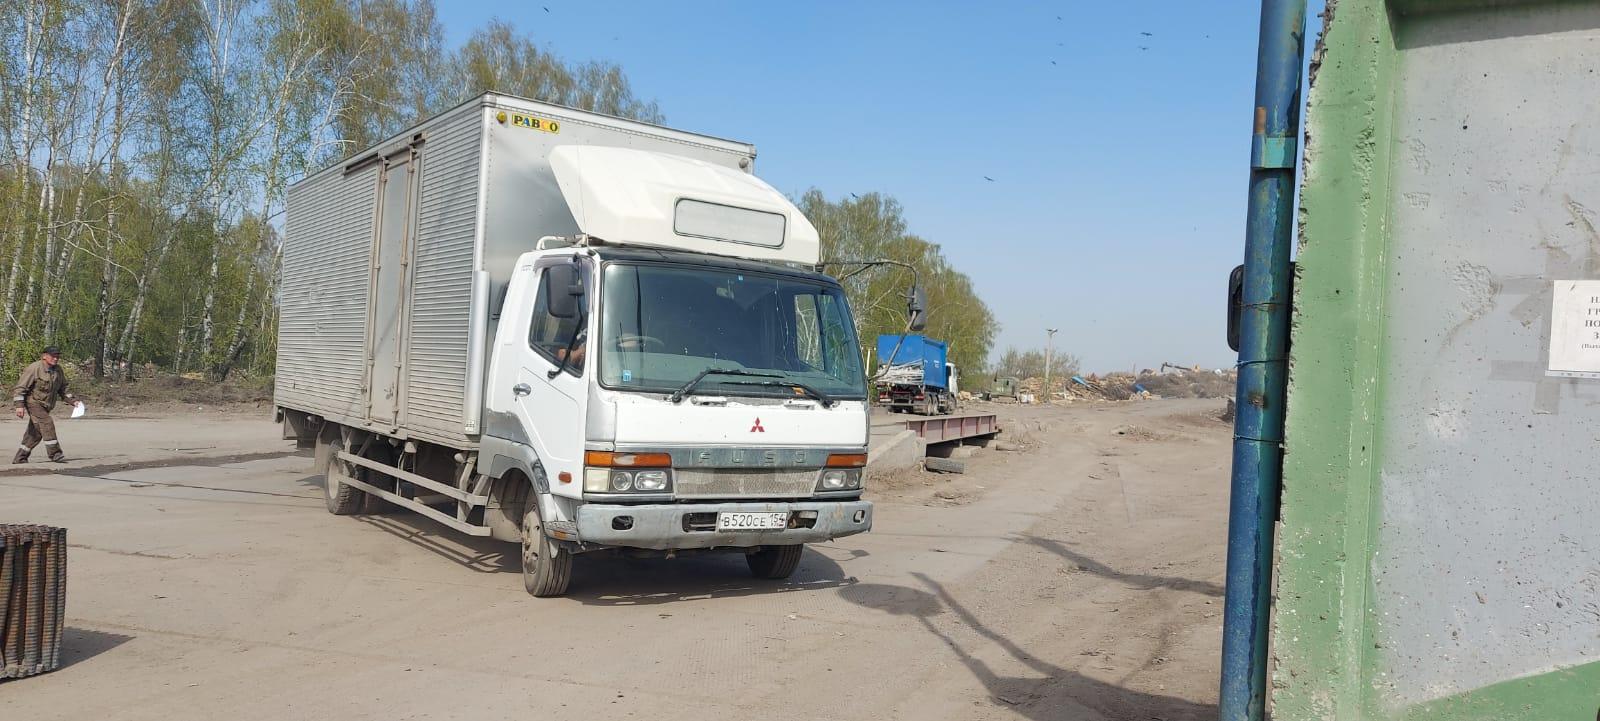 Фото «Перебрать 17 мусоровозов»: следователи выясняют, как на свалке в Новосибирске появился труп младенца 3